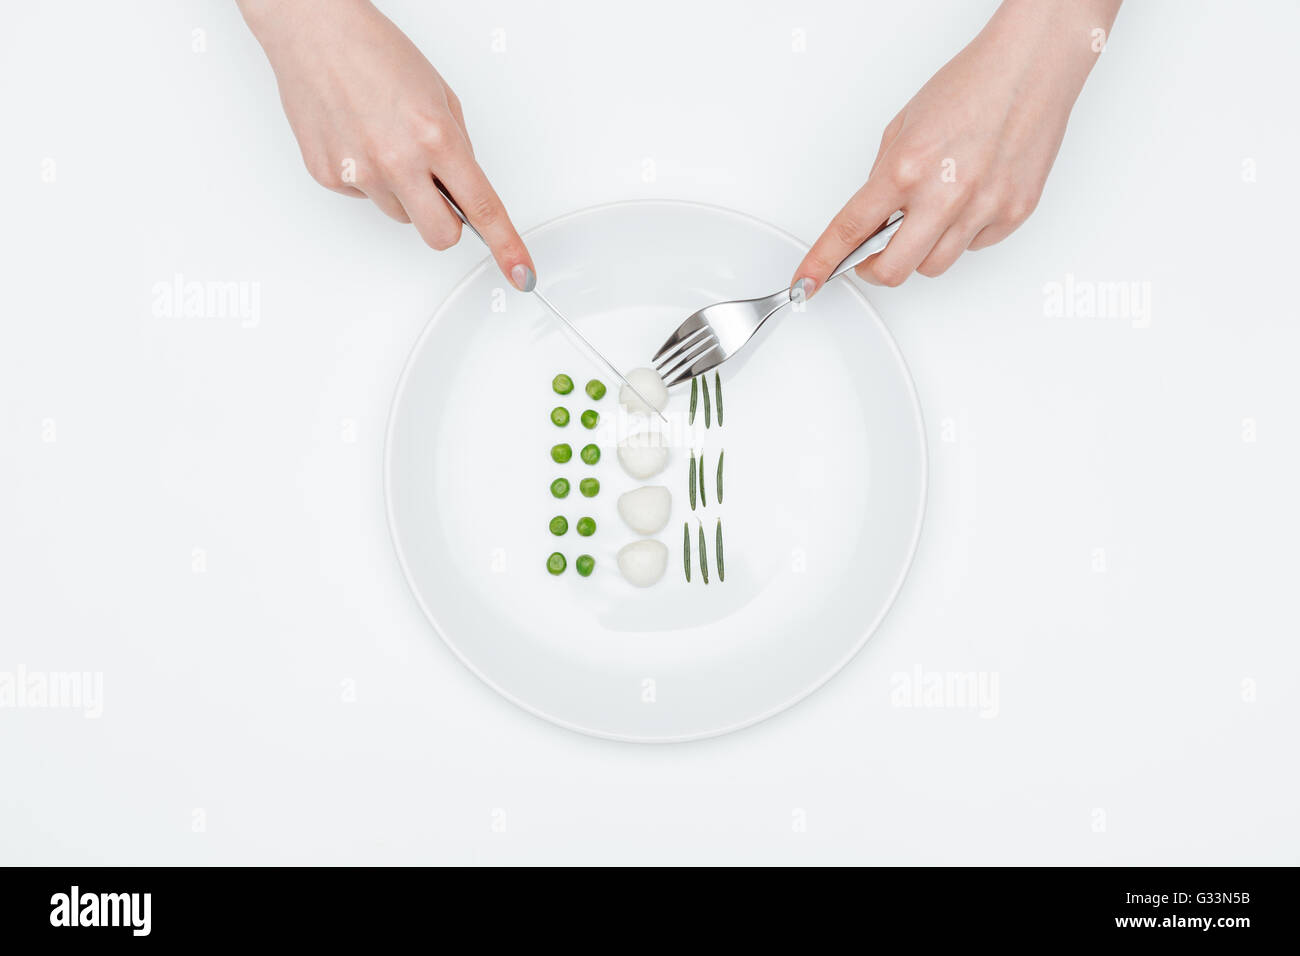 Draufsicht der Hände der jungen Frau Essen, grüne Erbsen, Mozzarella und Kräutern mit Messer und Gabel auf weißem Hintergrund Stockfoto